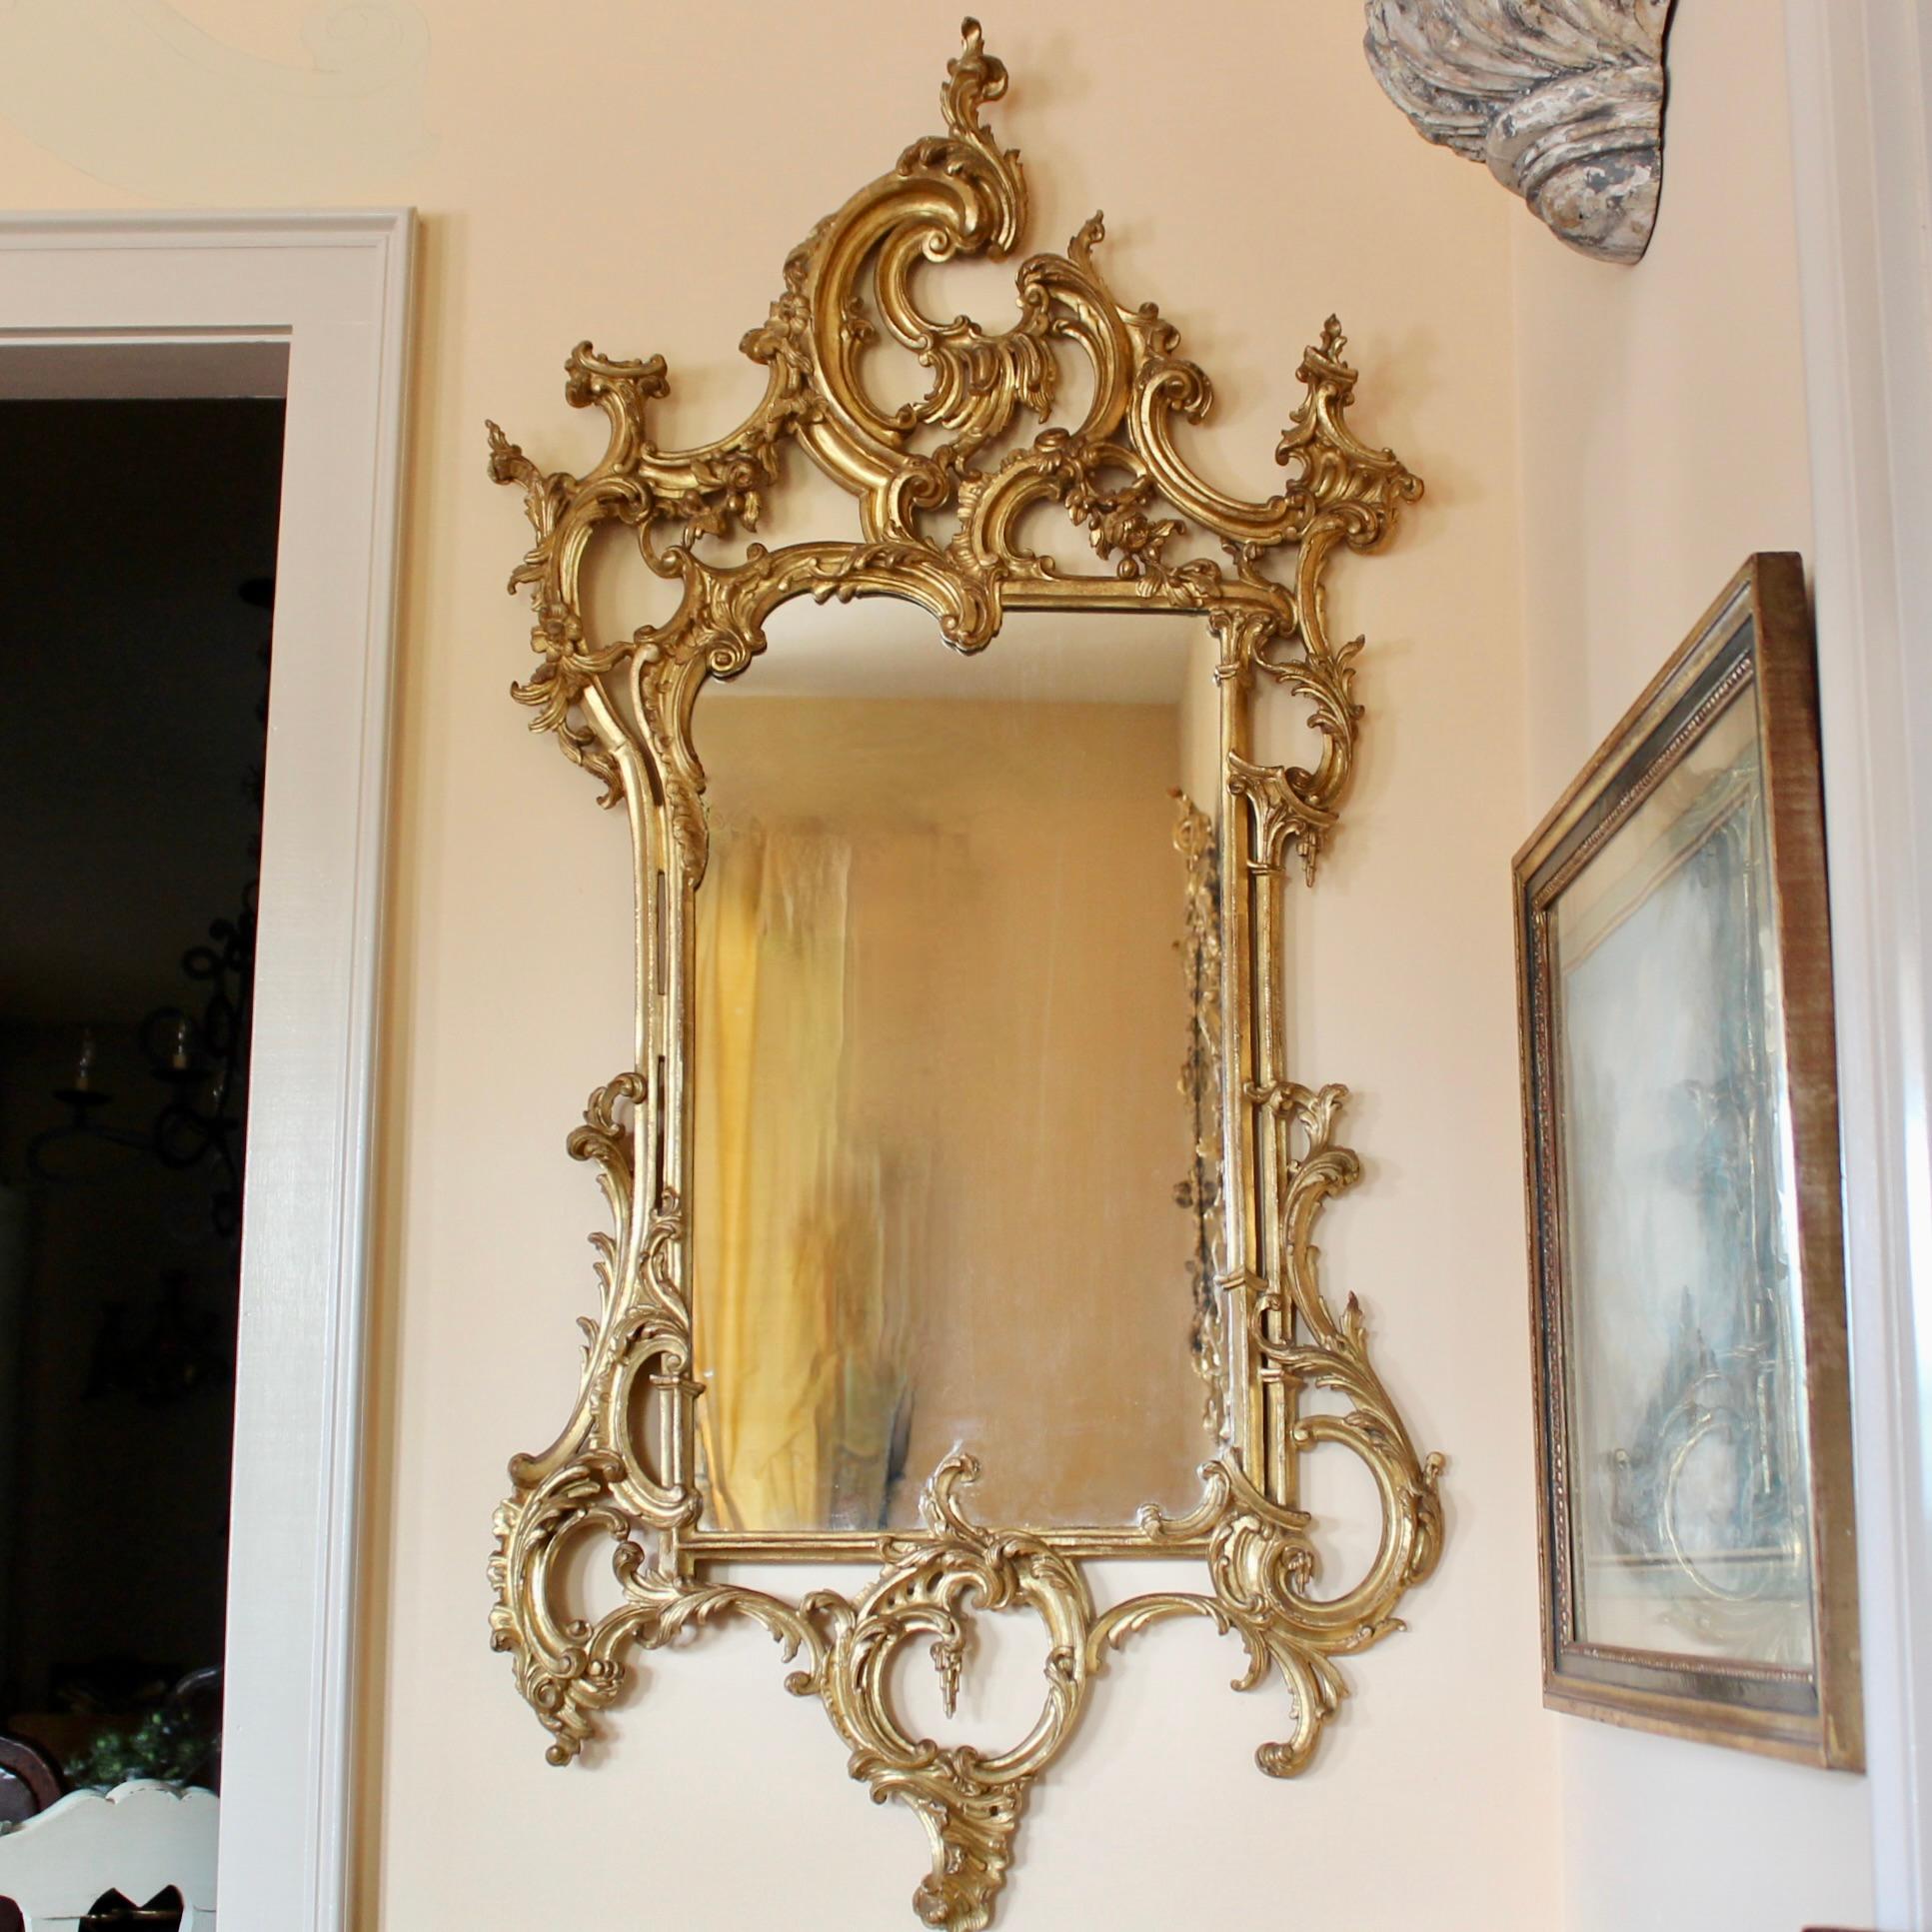 Ein fein geschnitzter italienischer Vergoldungsspiegel im Stil von George III. mit üppigen asymmetrischen Rokoko-Motiven, die gut ausgeführt und gut ausbalanciert sind. Guter Zustand. Die Vergoldung ist glänzend mit leichten Abnutzungserscheinungen,